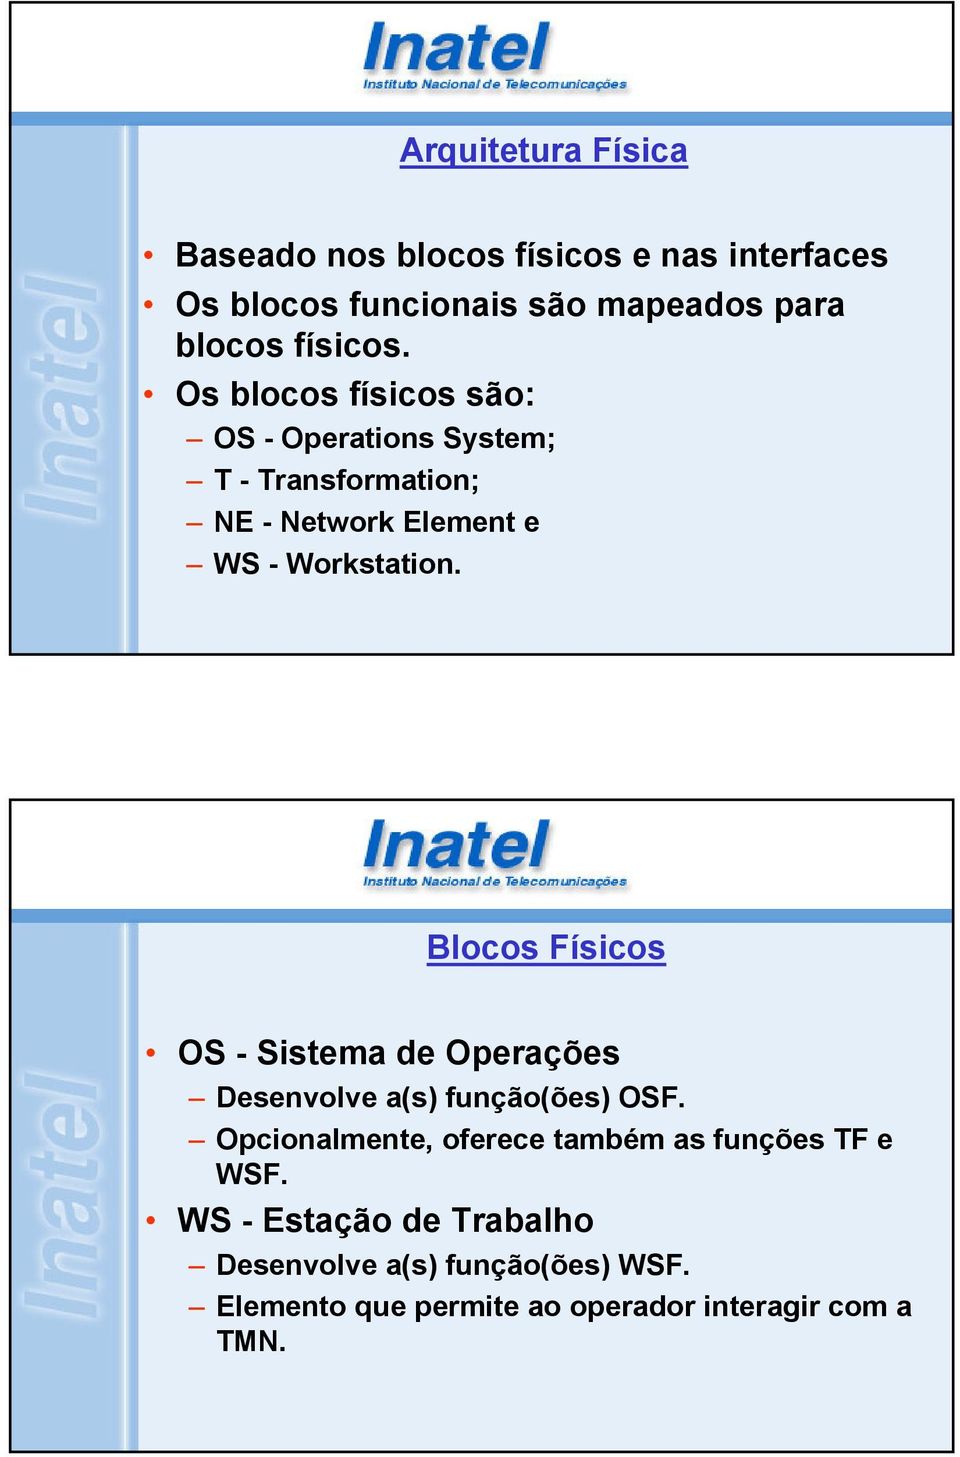 Blocos Físicos OS - Sistema de Operações Desenvolve a(s) função(ões) OSF.